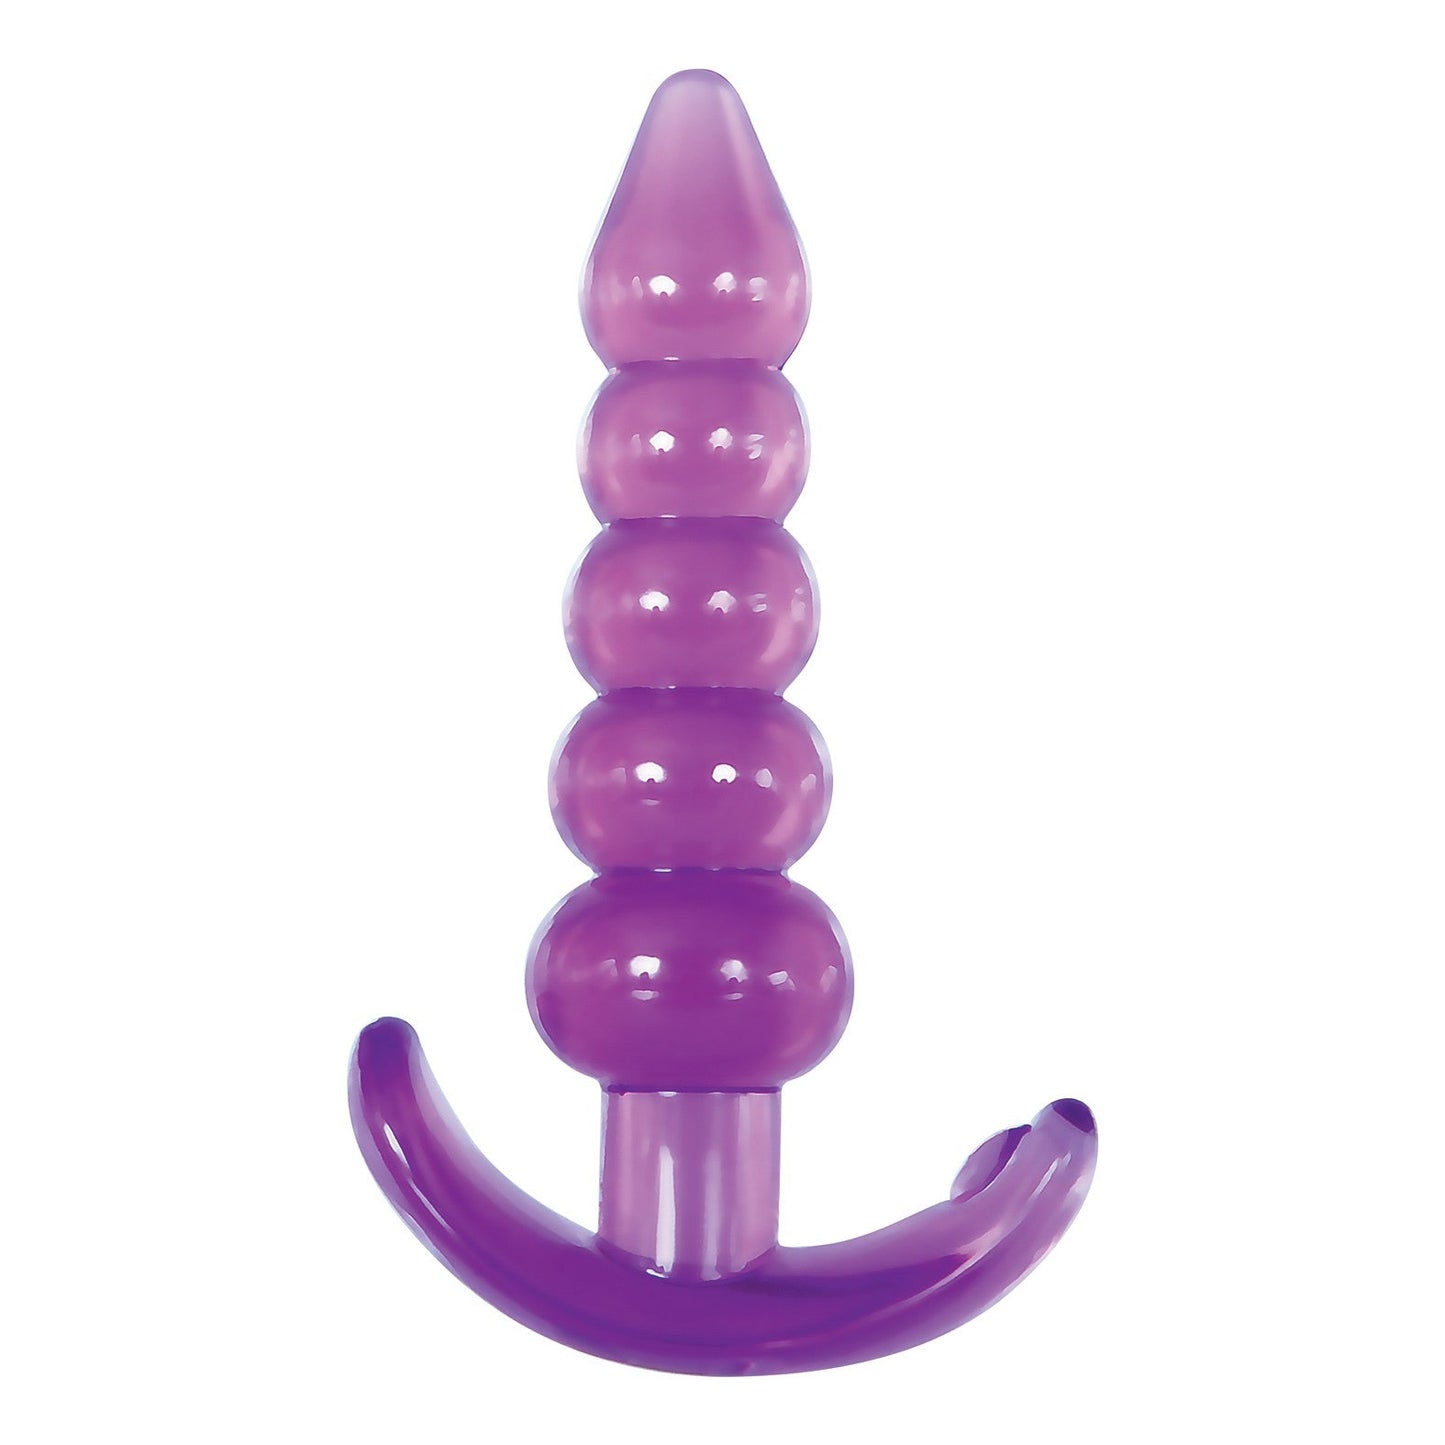 Adam & Eve Bumpy Delight Anal Plug - Purple